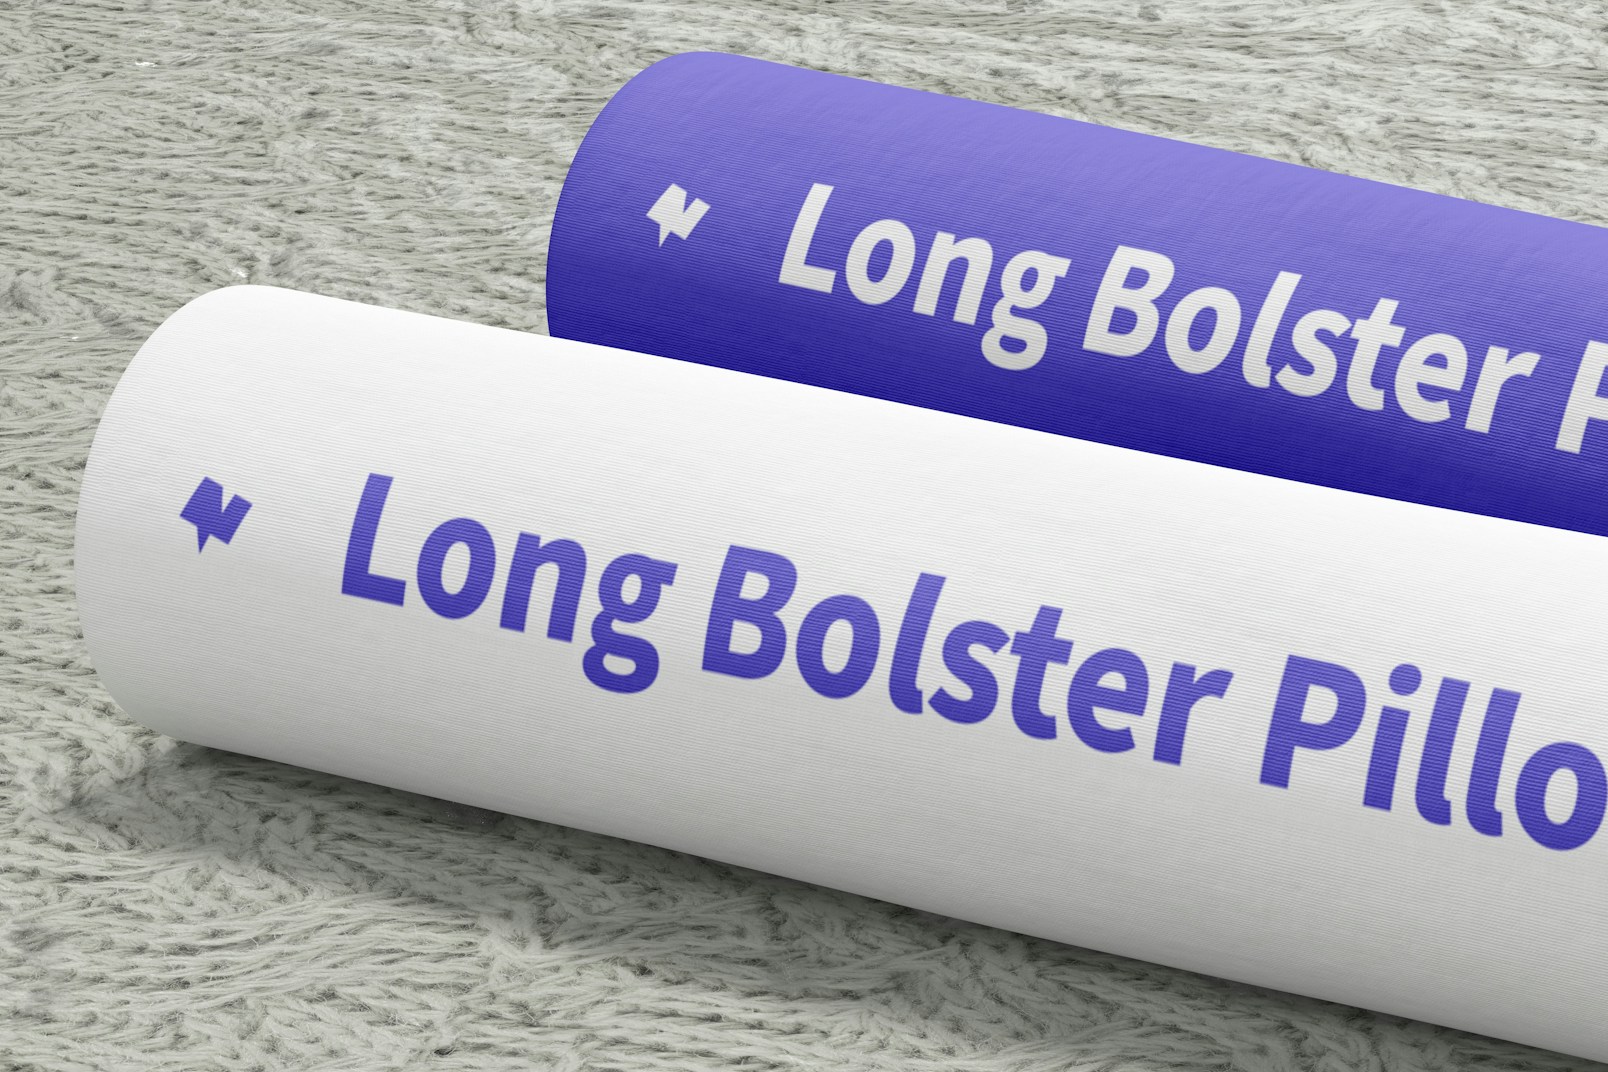 Long Bolster Pillows Mockup, Close-Up